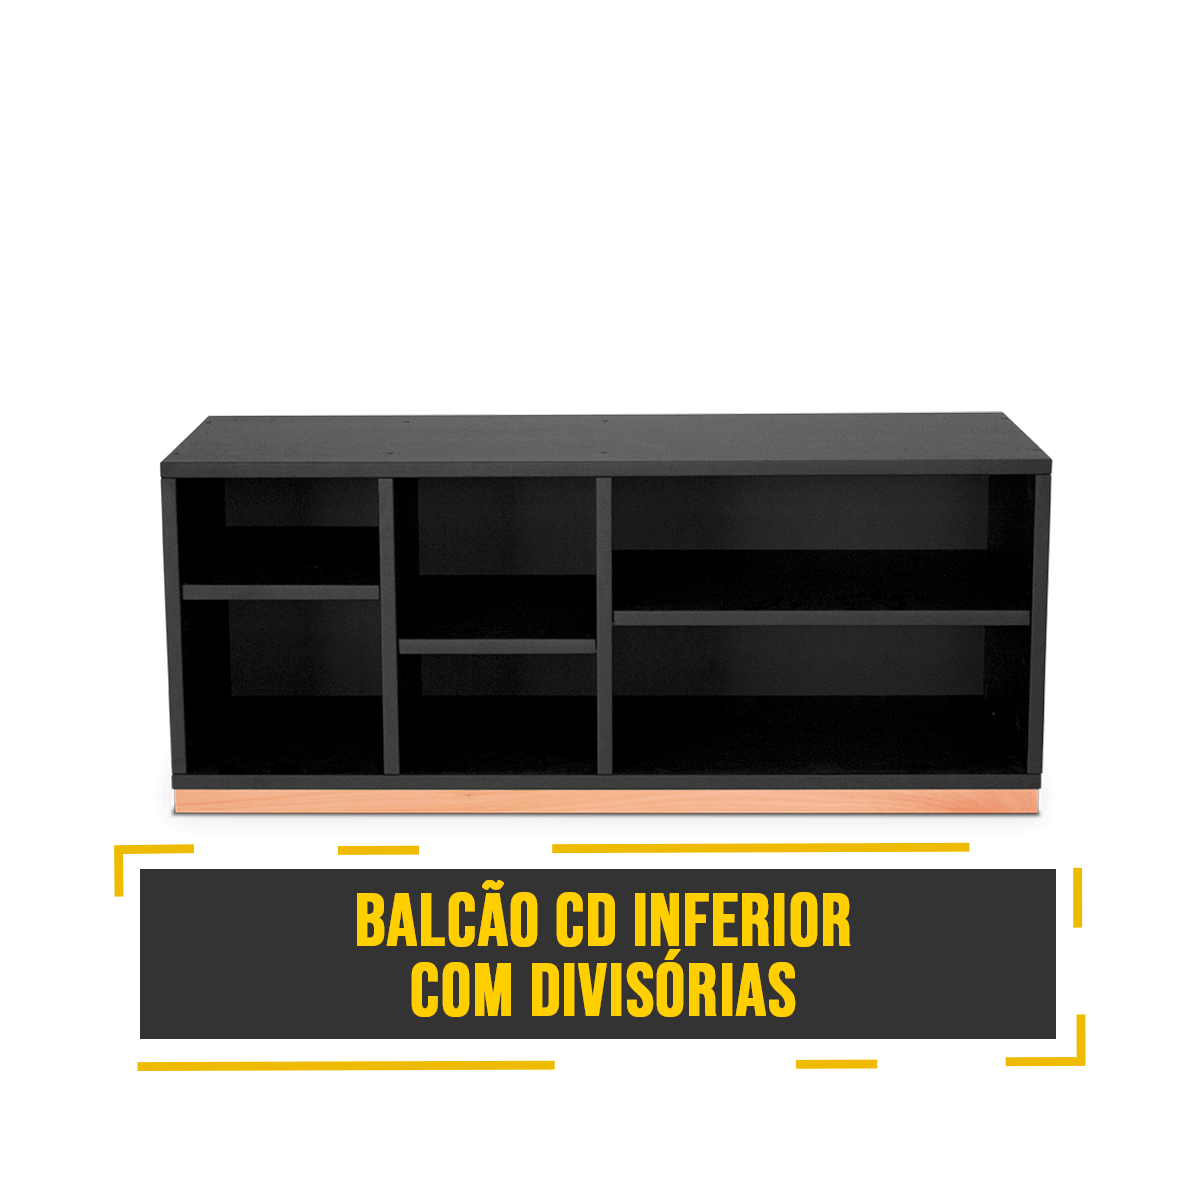 balcao-cd-inferior-com-divisorias-black